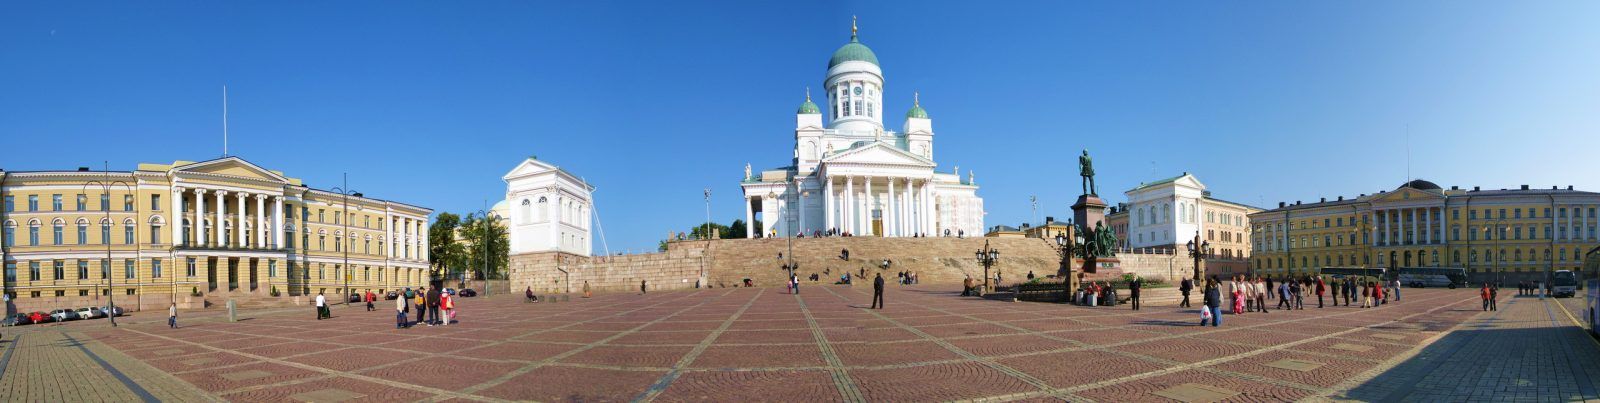 Хельсинки. Сенатская площадь.